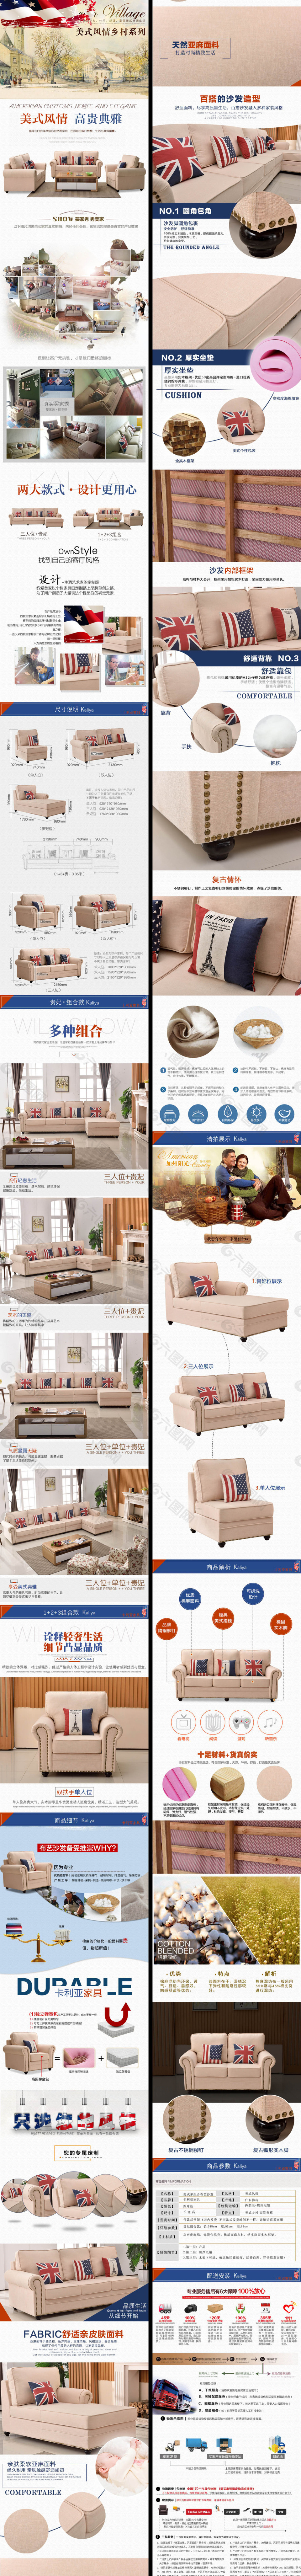 布艺沙发详情页模板 爆款美式欧式实木沙发